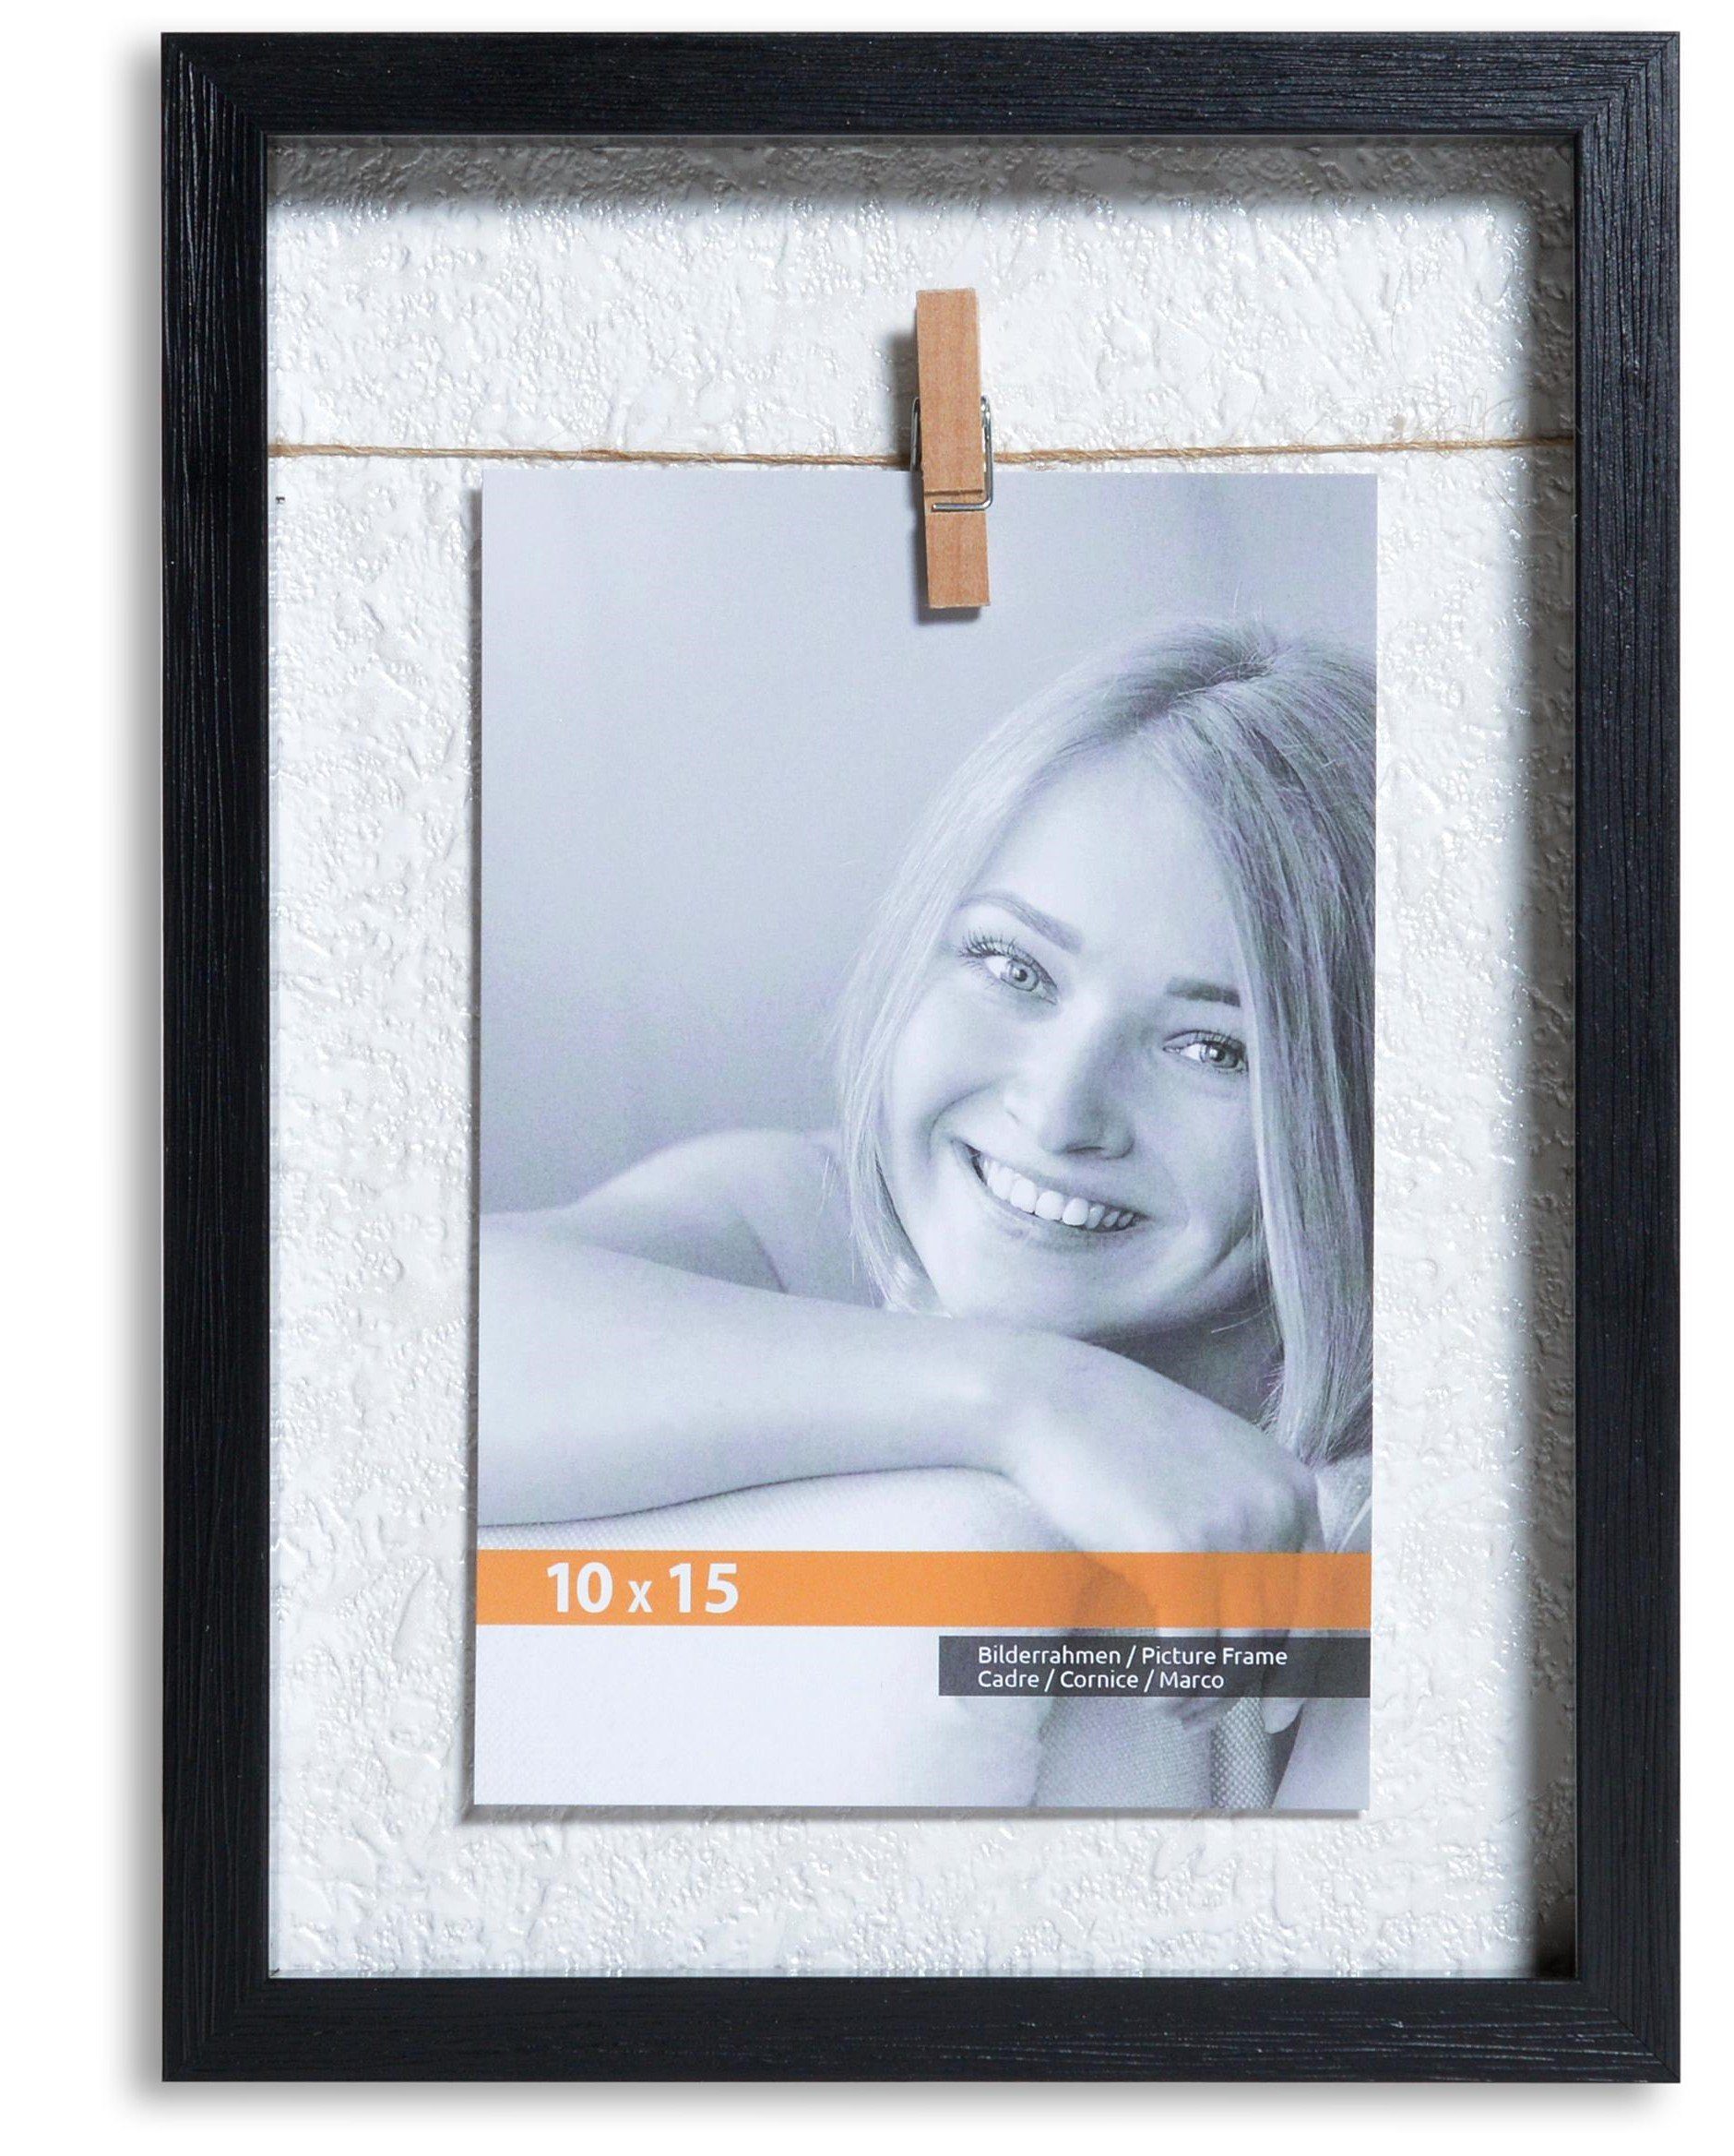 Victor (Zenith) Bilderrahmen Collage »Clip Rahmen«, in schwarz für 1 Bild  in 10x15 cm - Rahmen aus Holz mit extra Klammern zum anheften von Fotos  online kaufen | OTTO